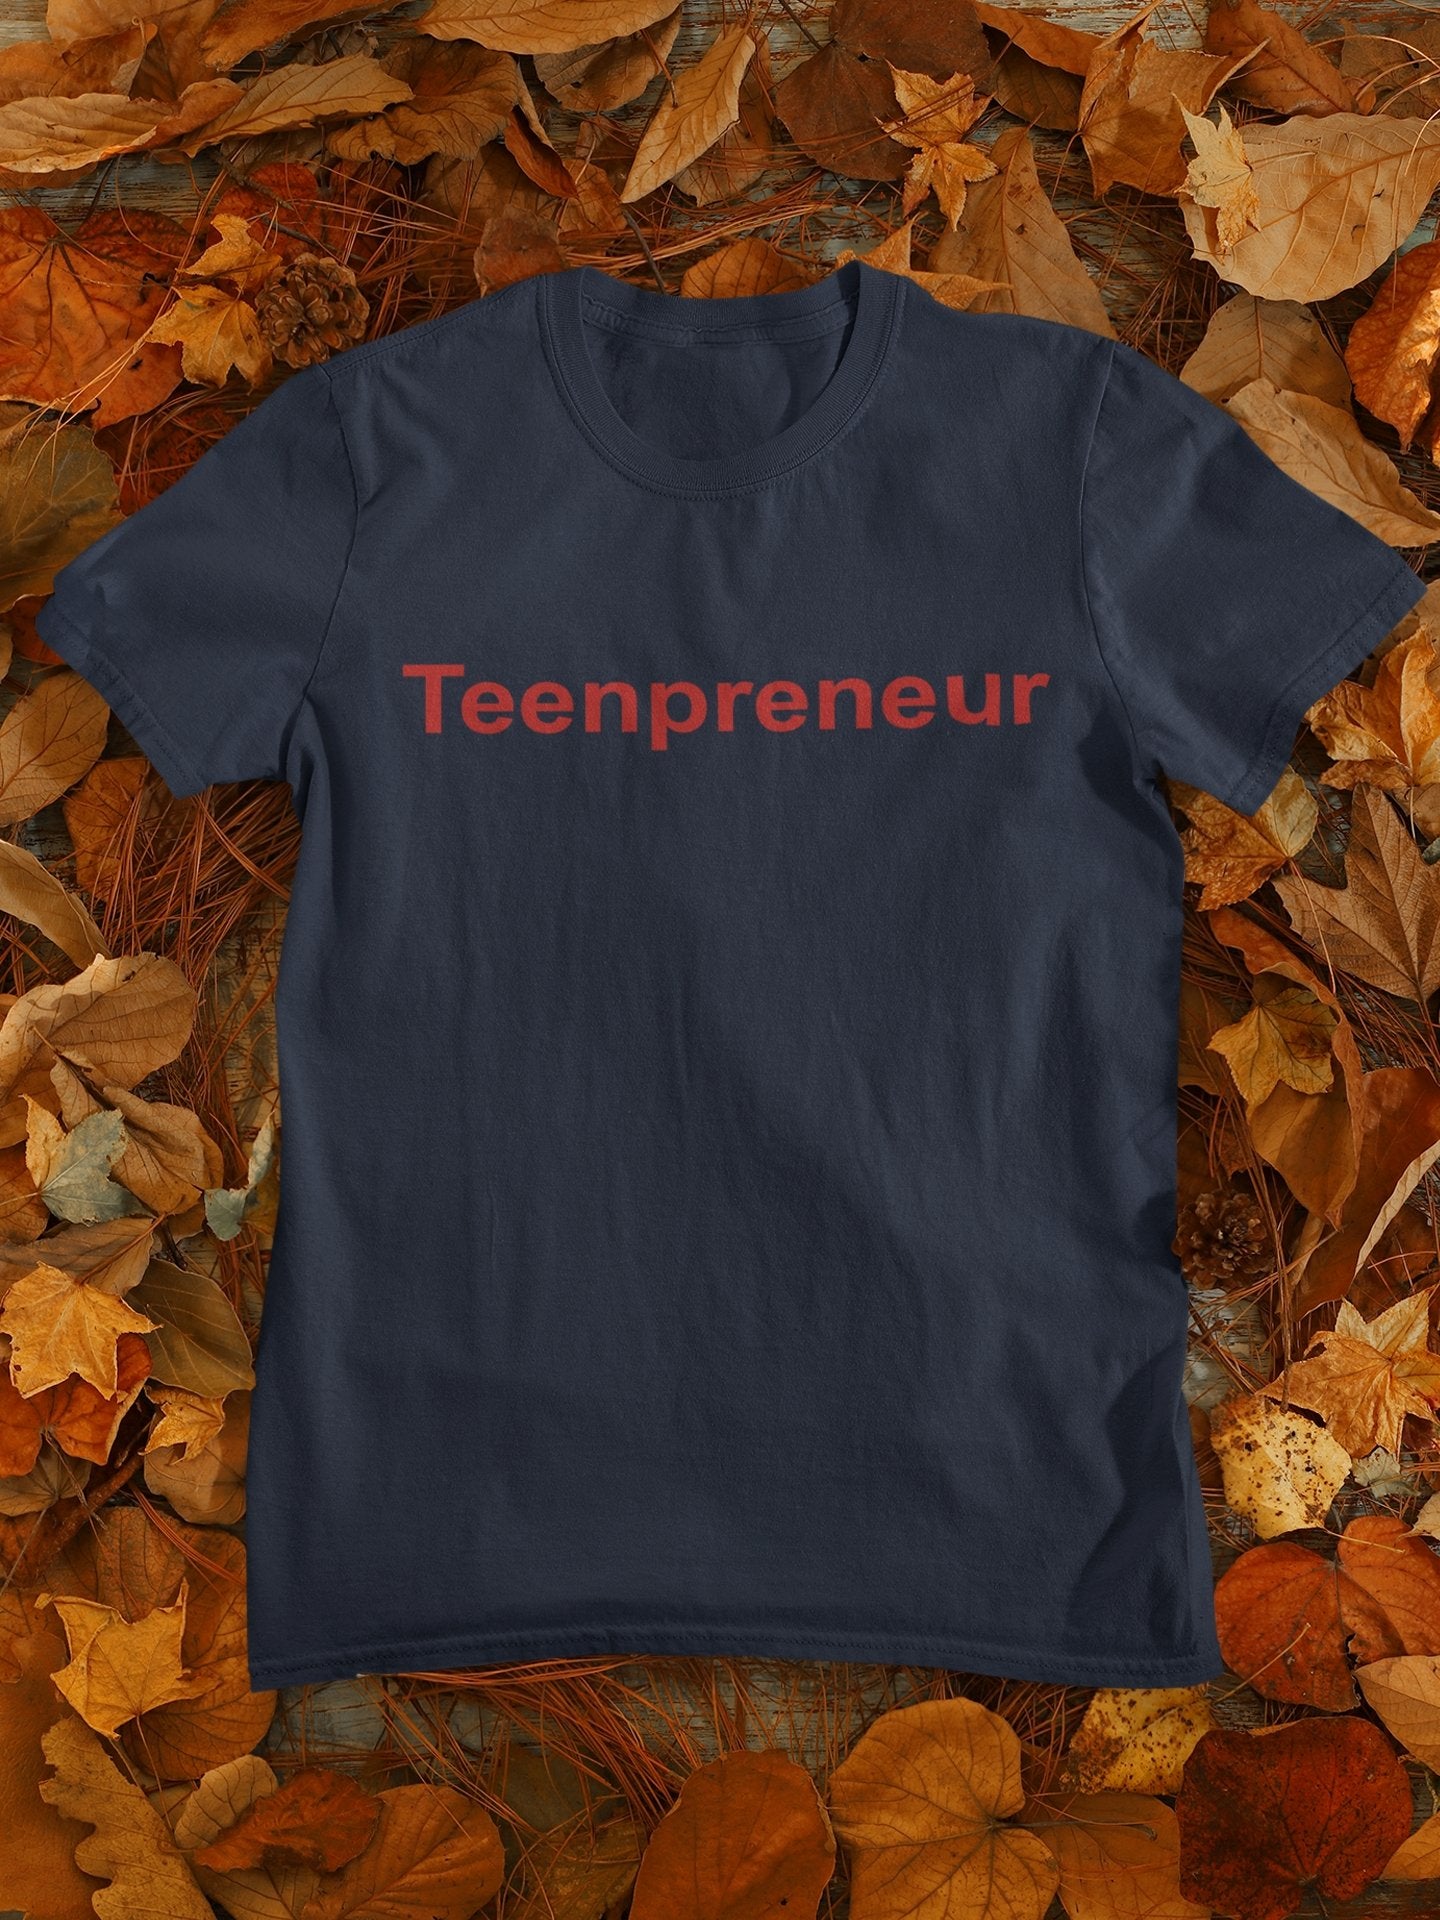 Teenpreneur Women Half Sleeves T-shirt- FunkyTeesClub - Funky Tees Club